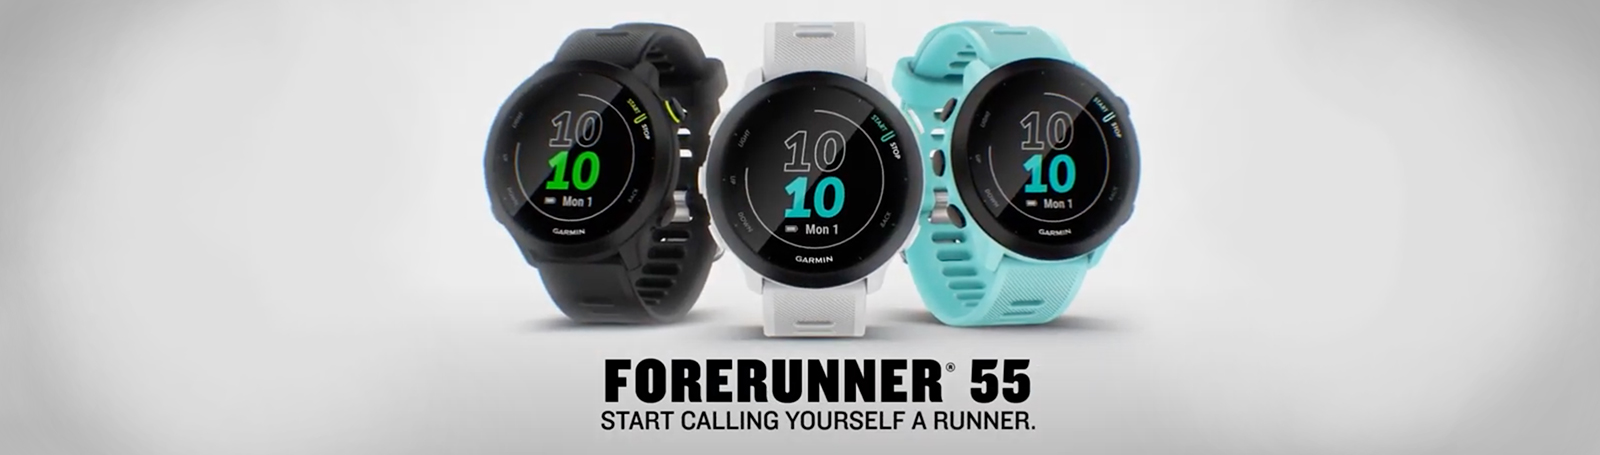 Forerunner 55 Start Calling Yourself A Runner